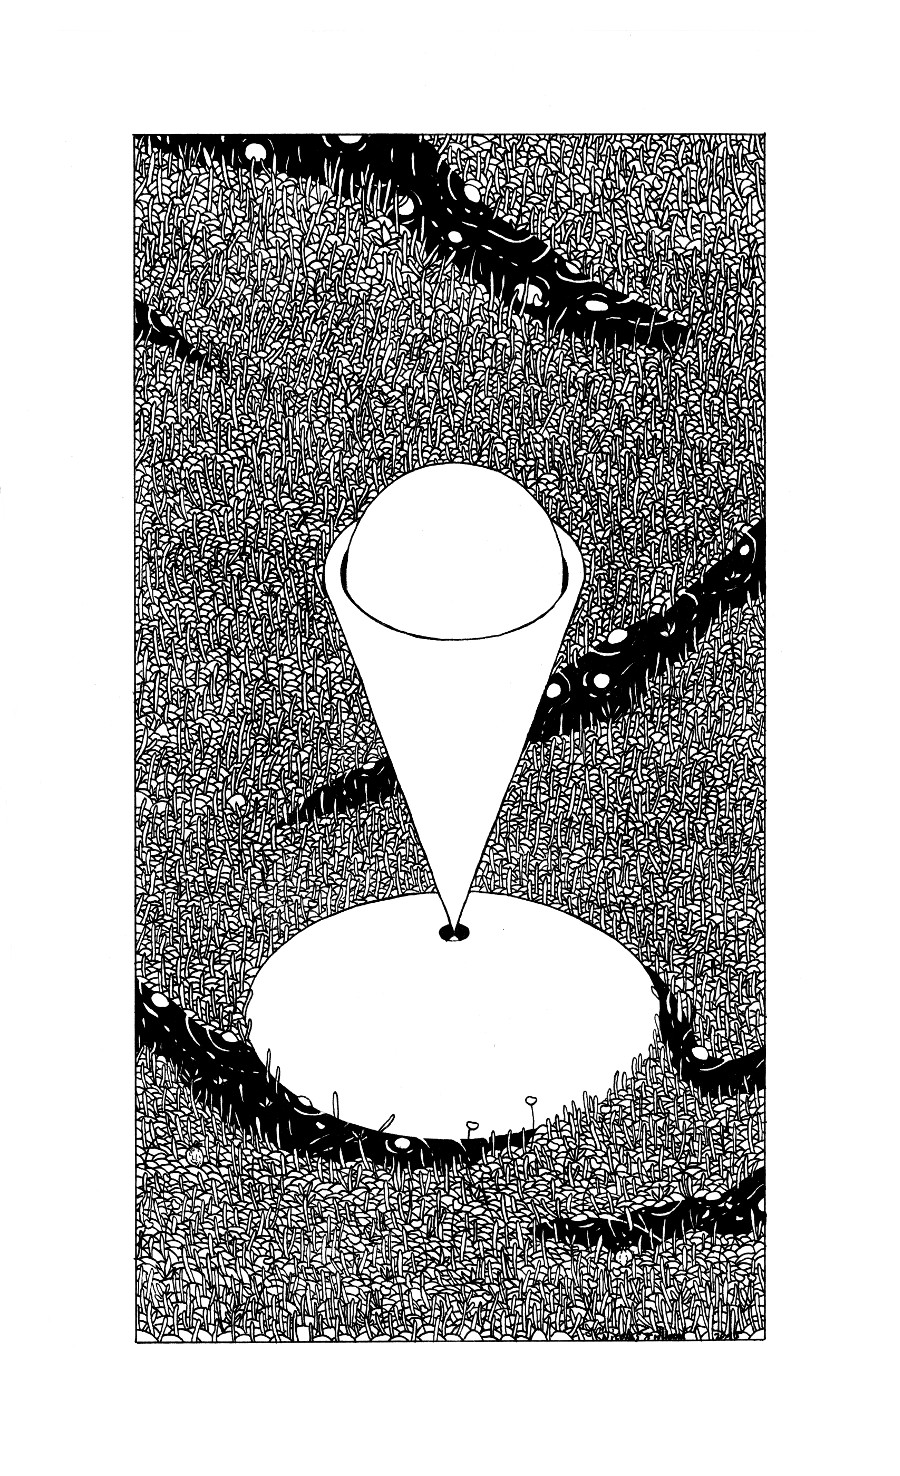 nicolas-trillaud-illustration-2015-1558-cone